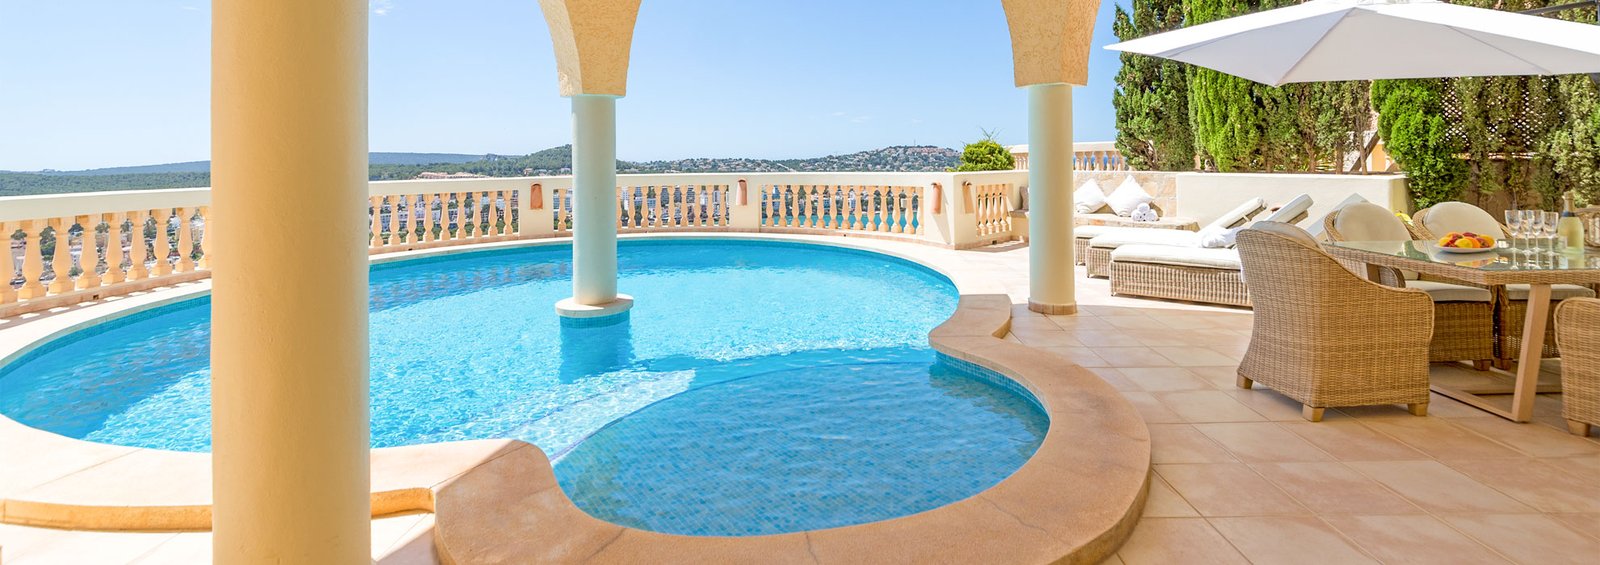 Villa with pool and sea view - Mallorca